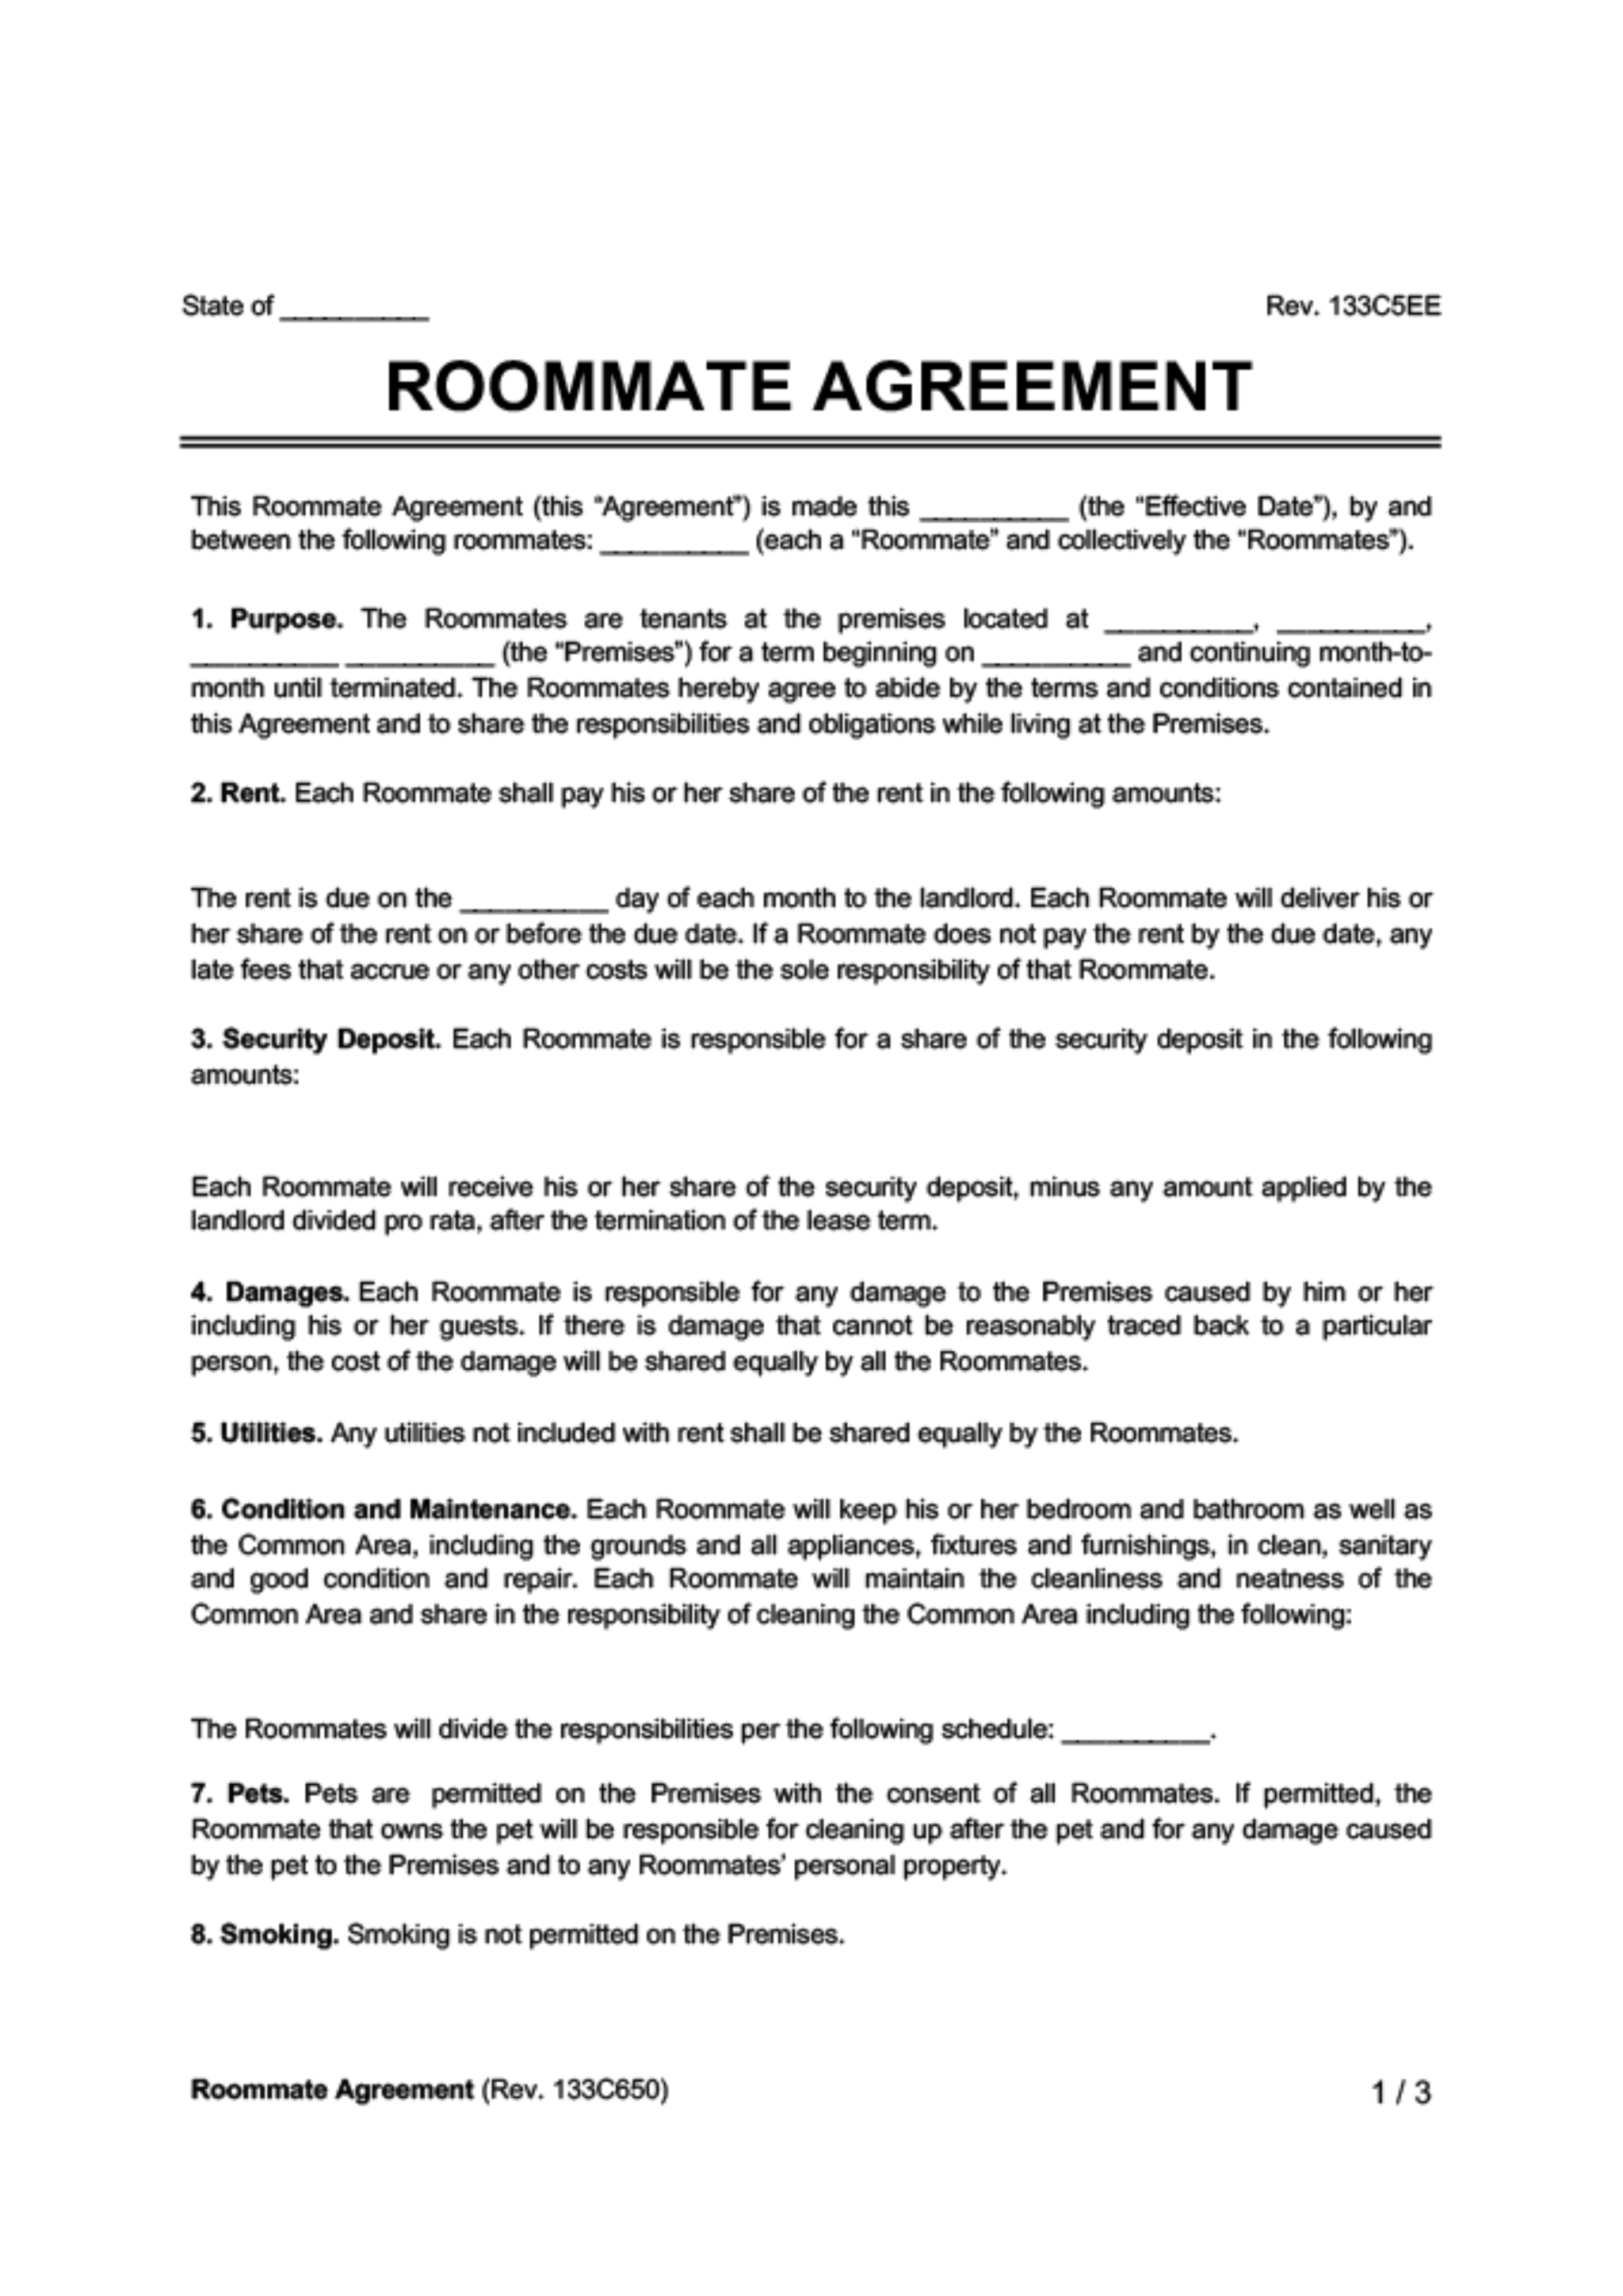 Roommate Agreement 